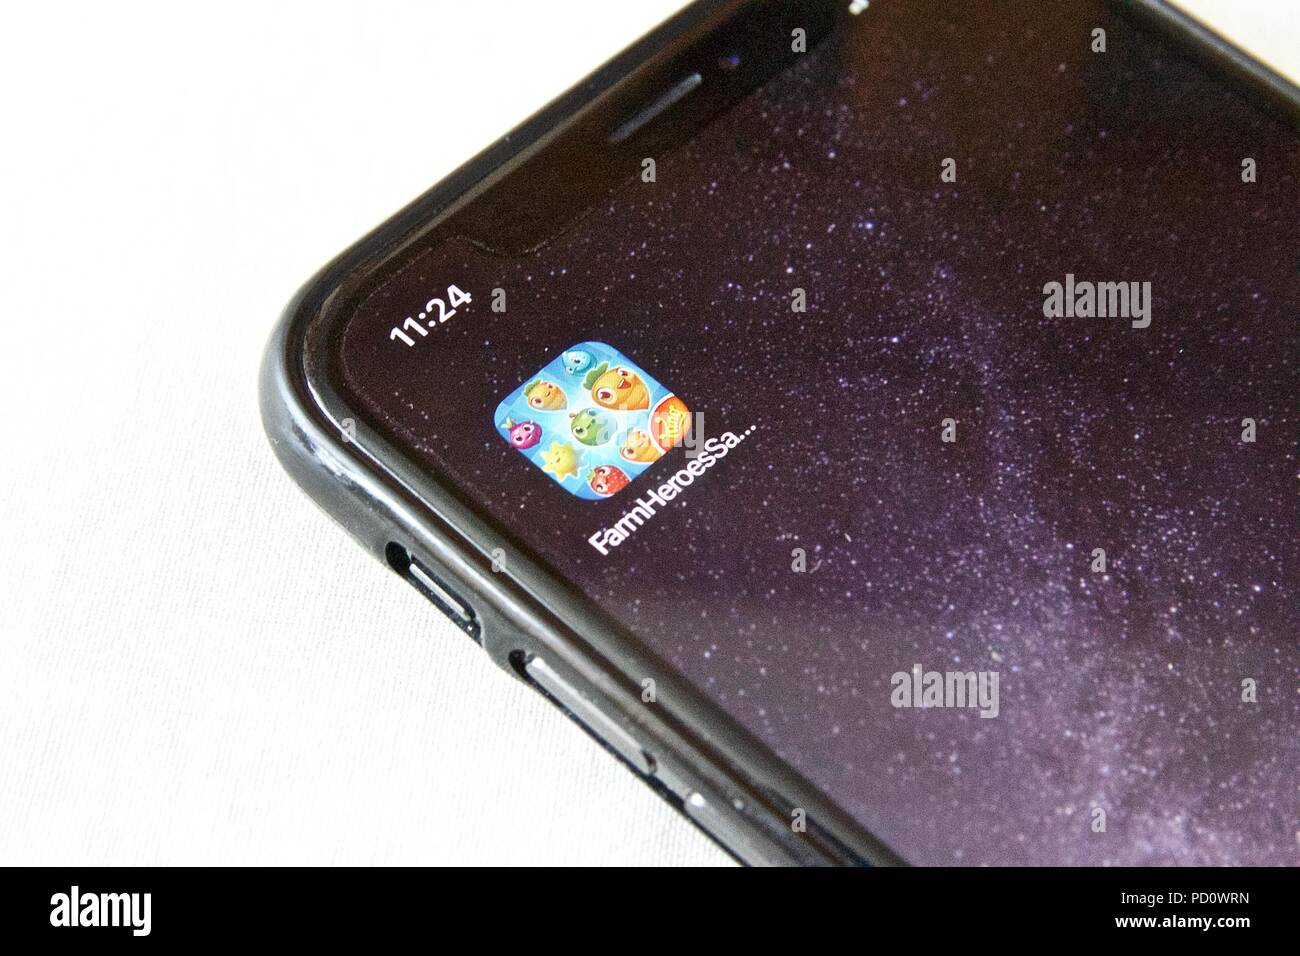 L'icône de l'application pour les héros de la ferme, une ferme Saga puzzle match 3 jeu à thème fait par le Roi, sur un iPhone X sur un fond blanc. Banque D'Images